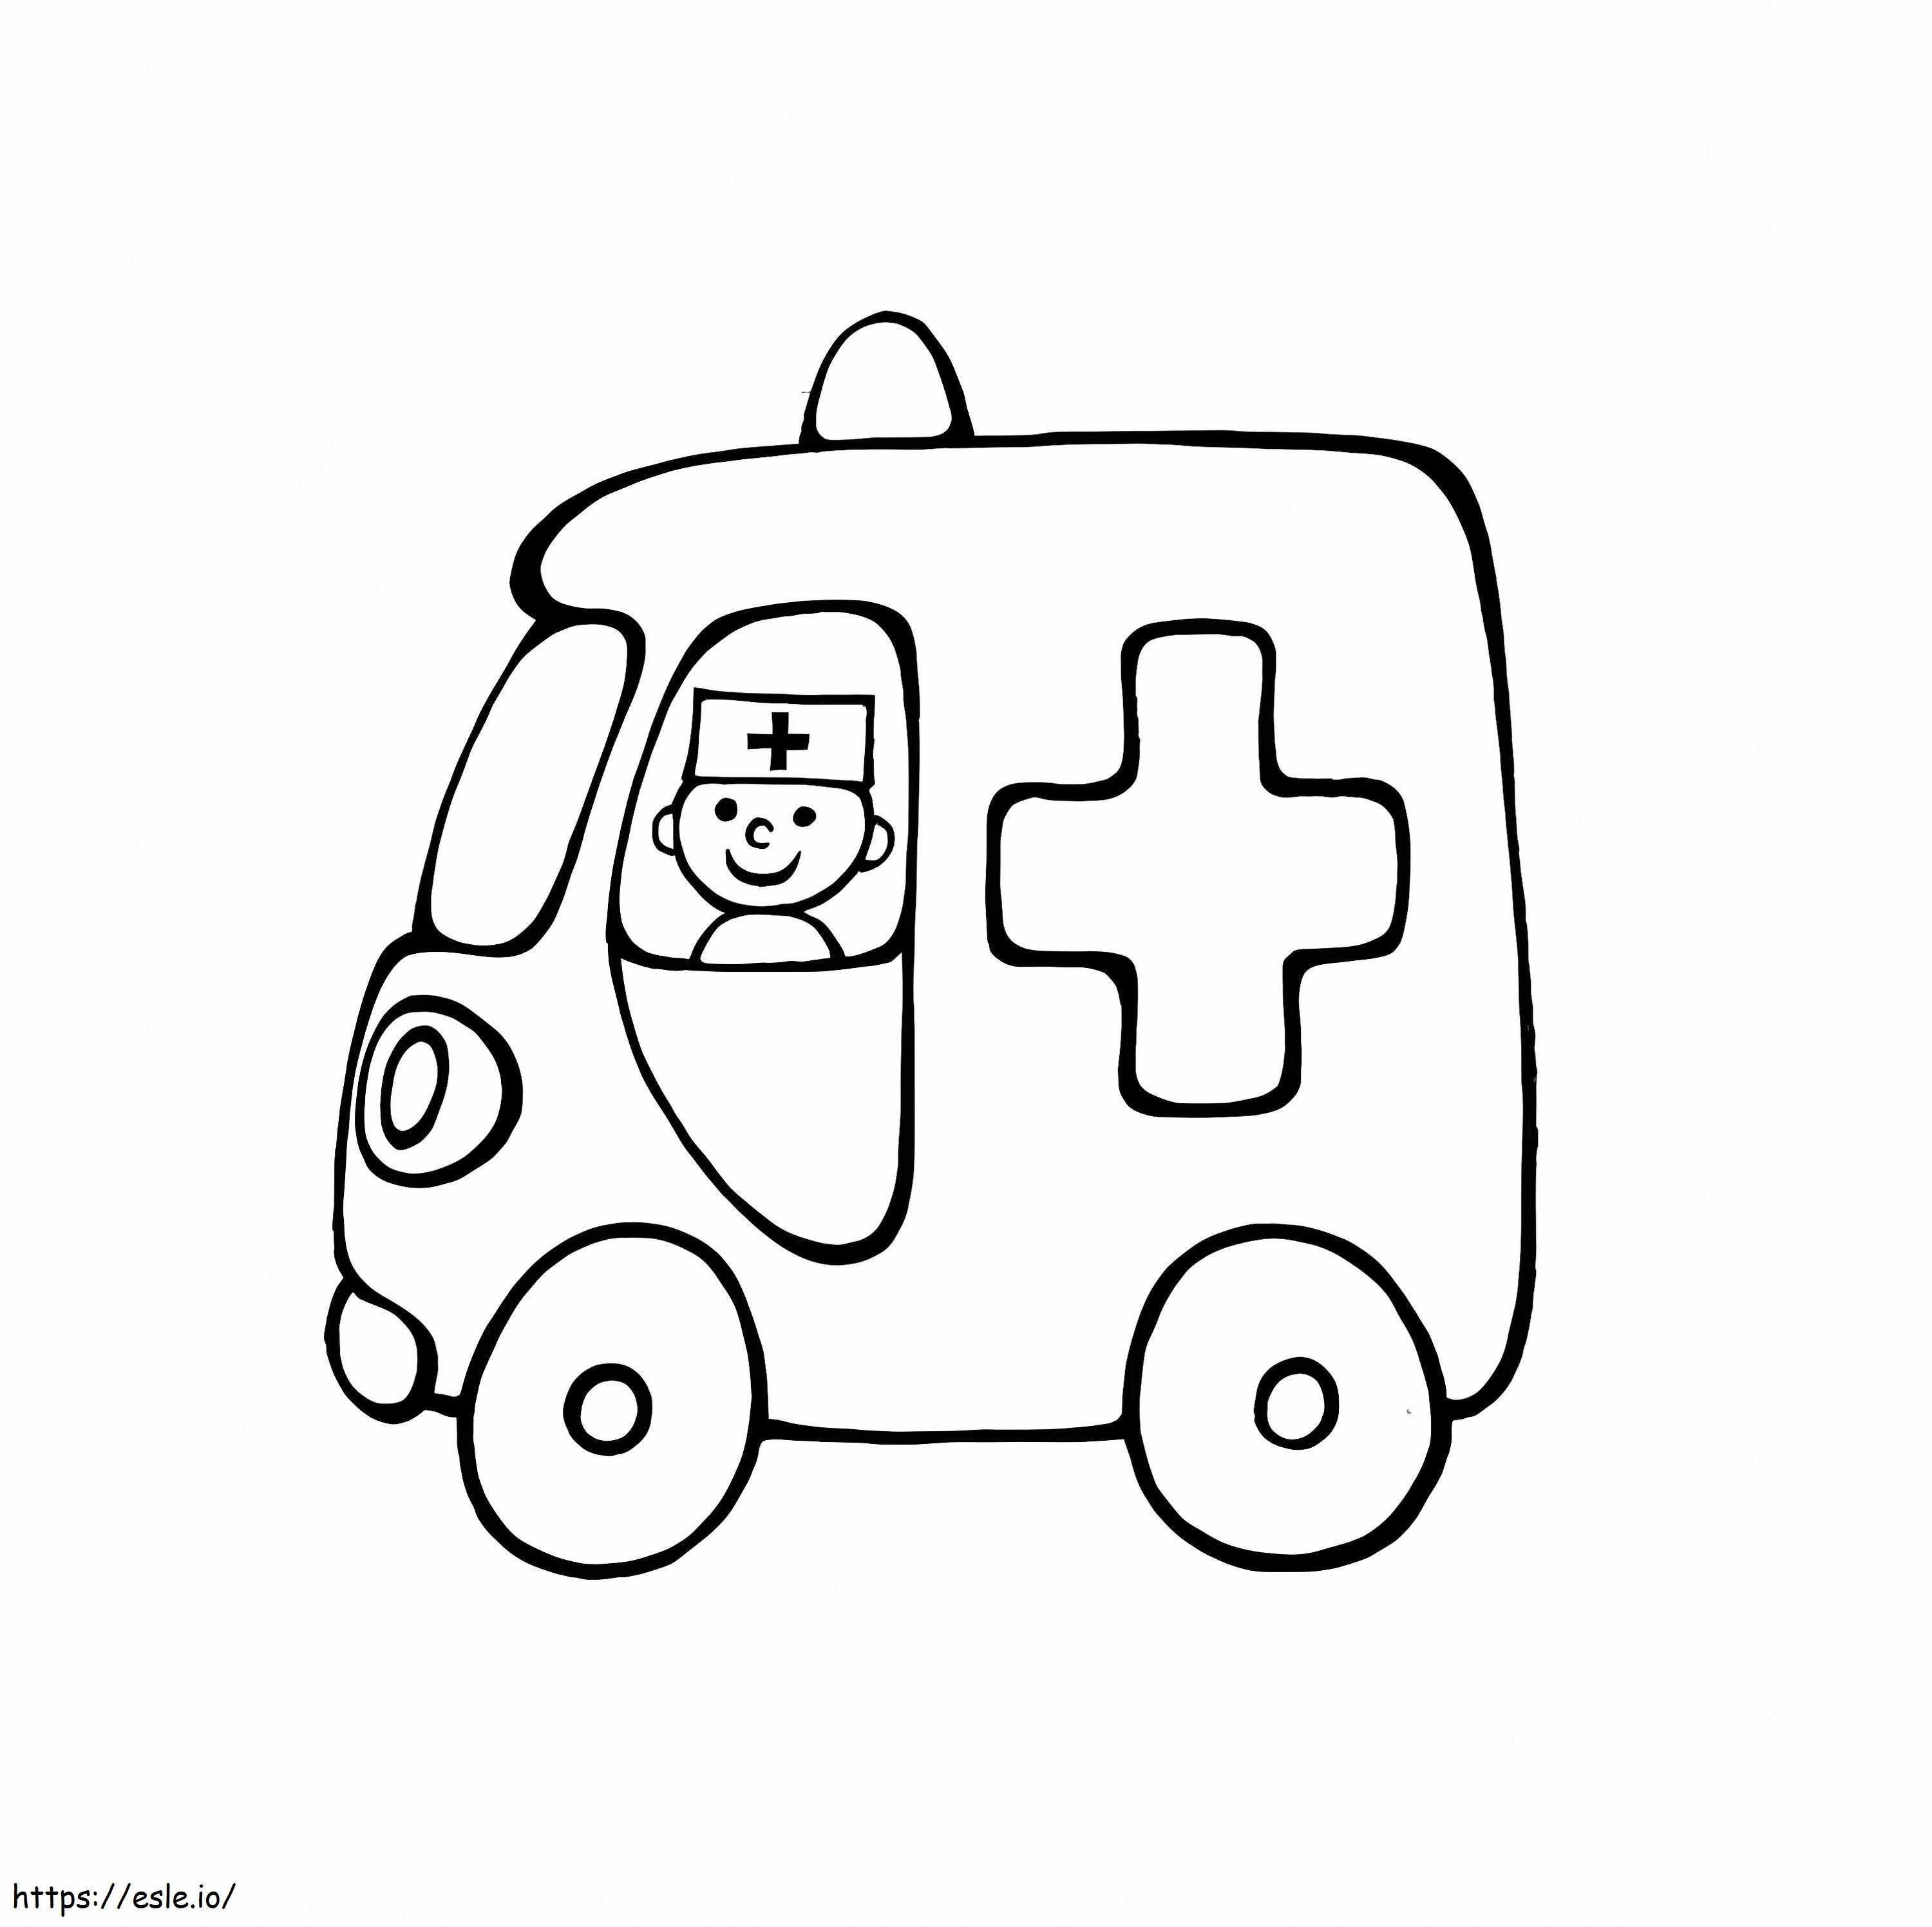 Ambulance 8 coloring page